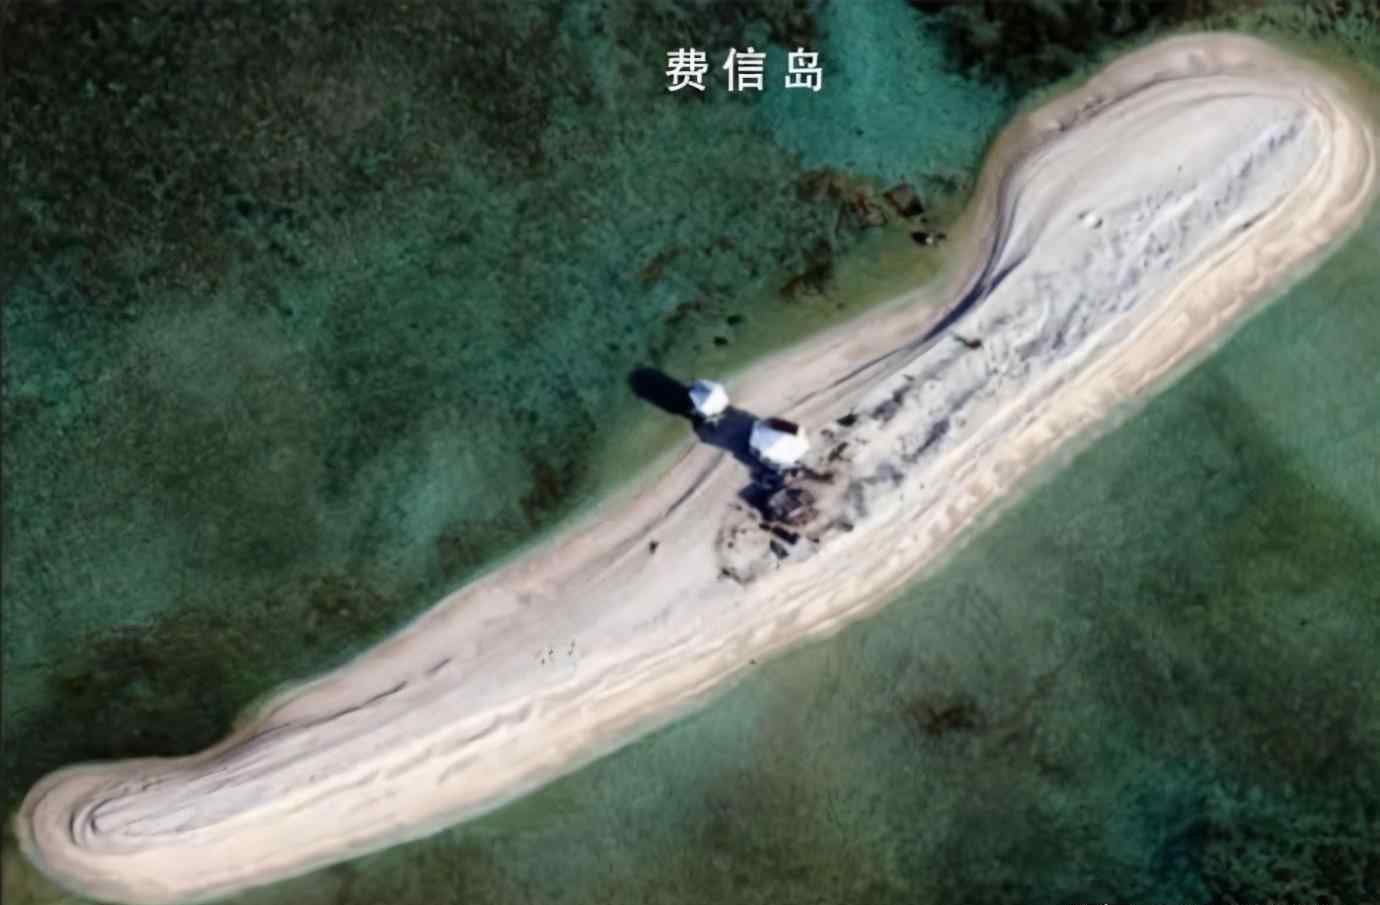 费信岛 中国实际控制南海多少岛礁？这个数字很有参考价值